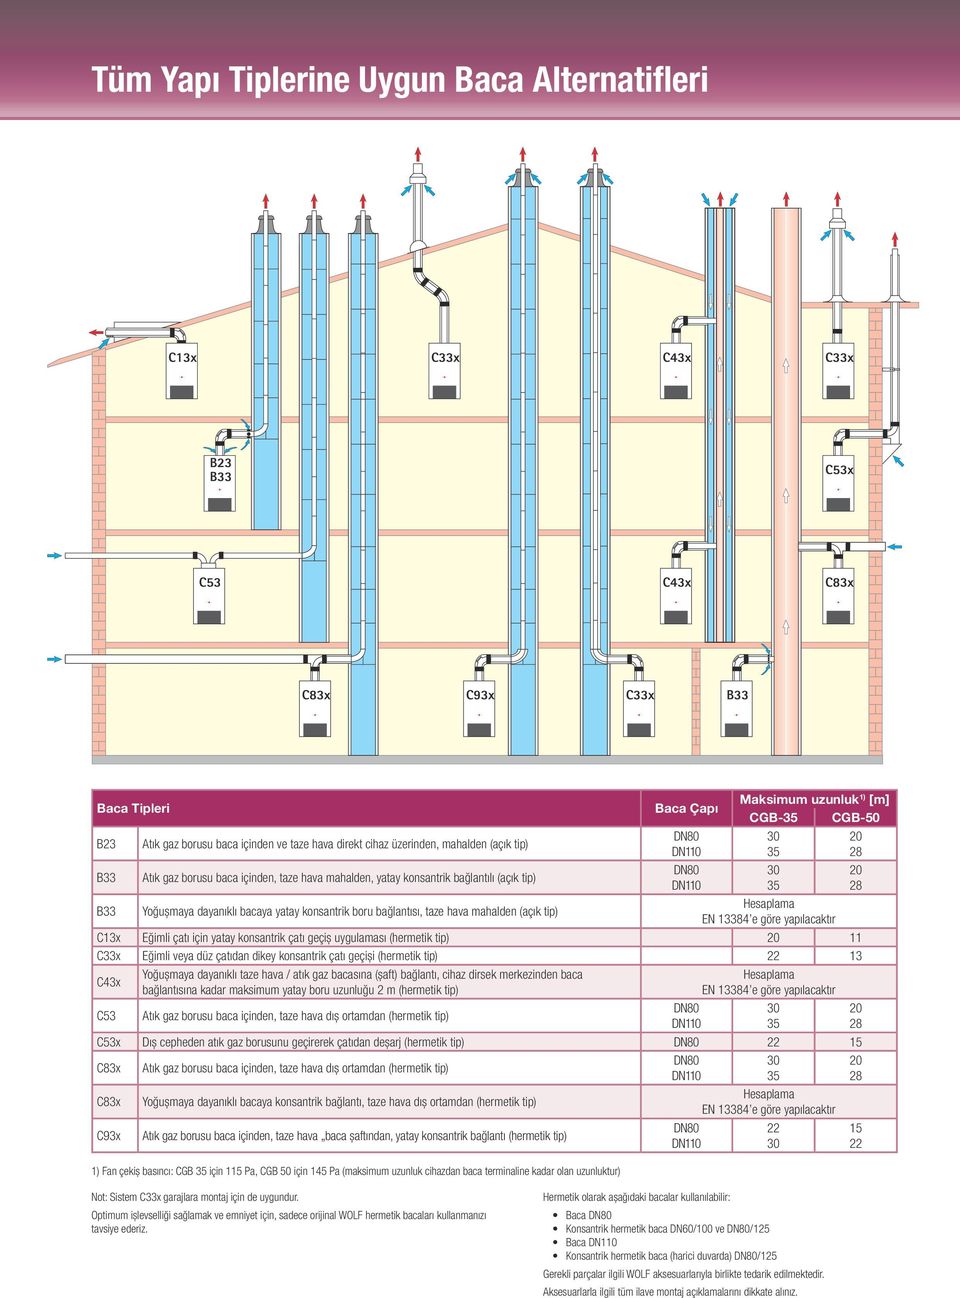 konsantrik boru bağlantısı, taze hava mahalden (açık tip) Hesaplama EN 13384 e göre yapılacaktır C13x Eğimli çatı için yatay konsantrik çatı geçiş uygulaması (hermetik tip) 20 11 C33x Eğimli veya düz